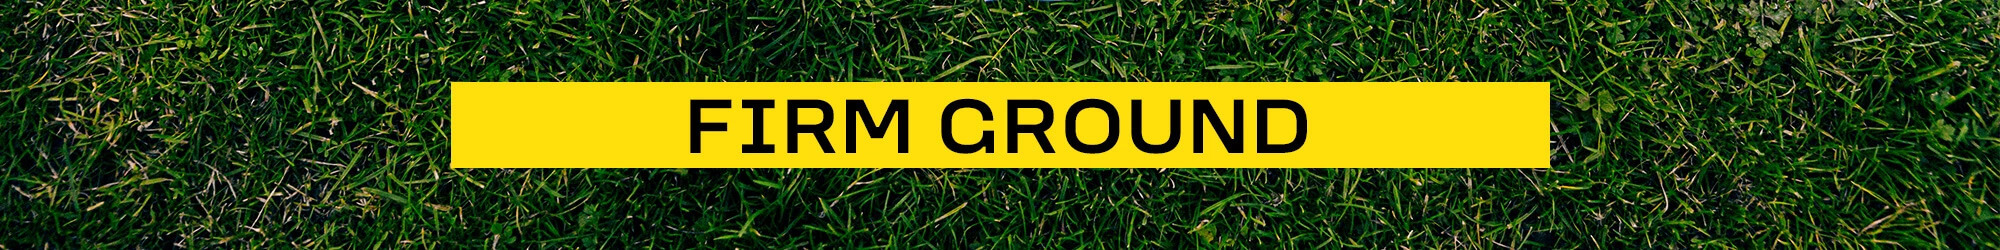 נעלי כדורגל Fg Firm Ground + MG Multi Ground - R-SPORT